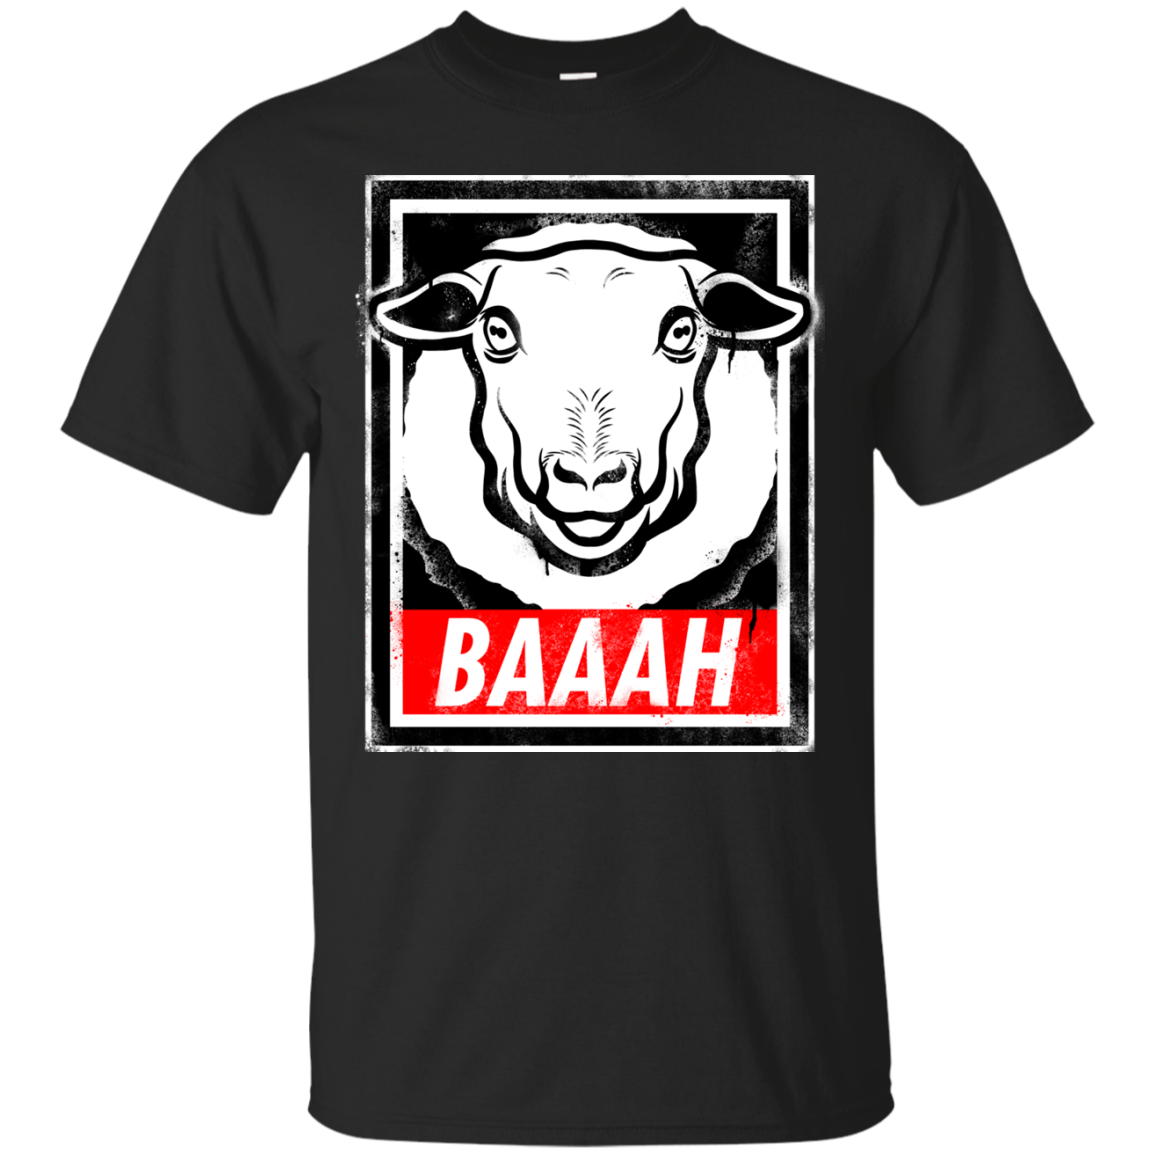 BAAAH T-Shirt